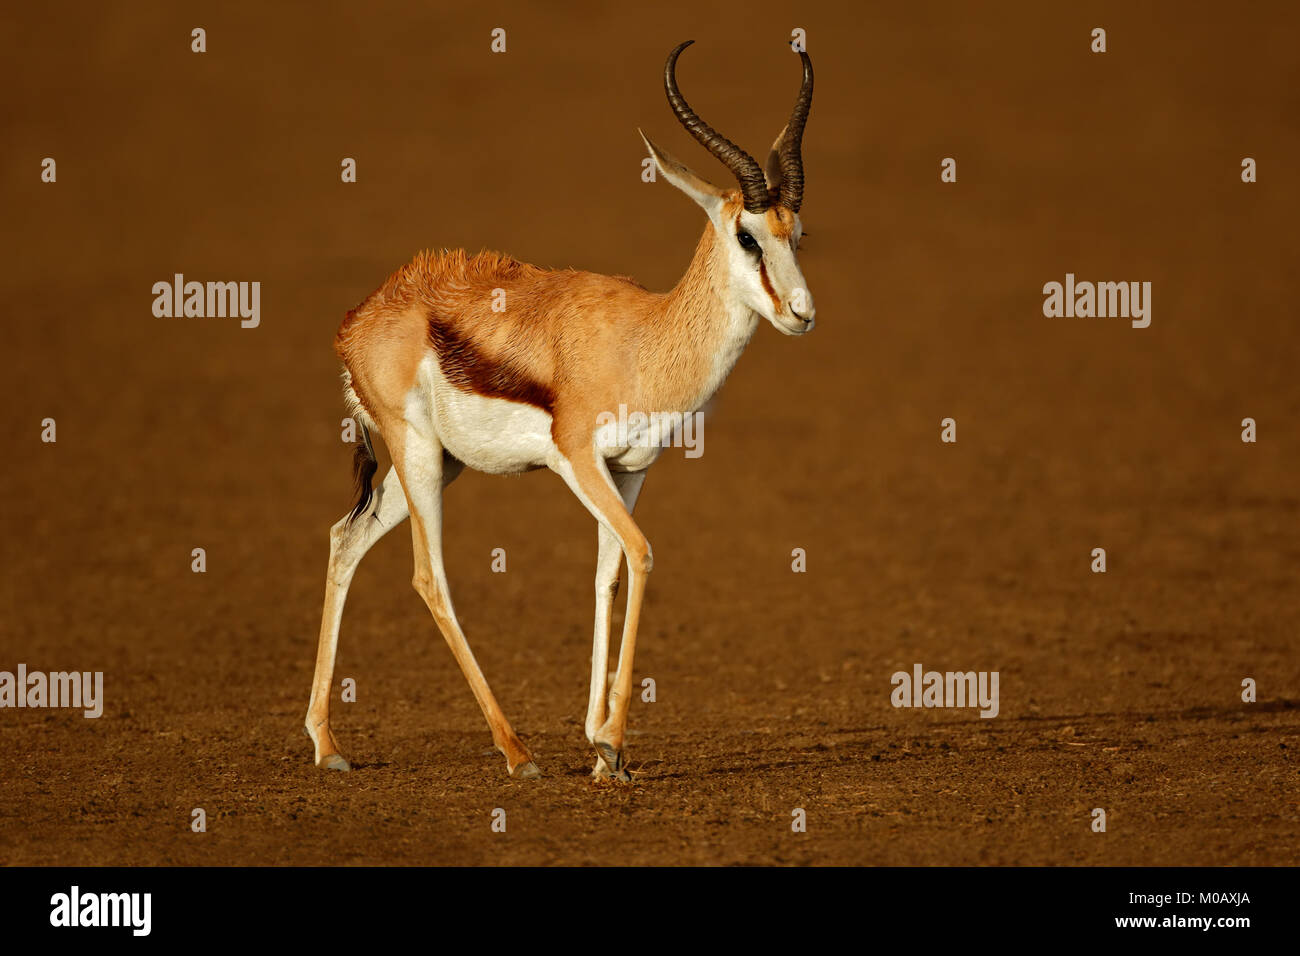 A springbok antelope (Antidorcas marsupialis) wet after the rain, Kalahari desert, South Africa Stock Photo